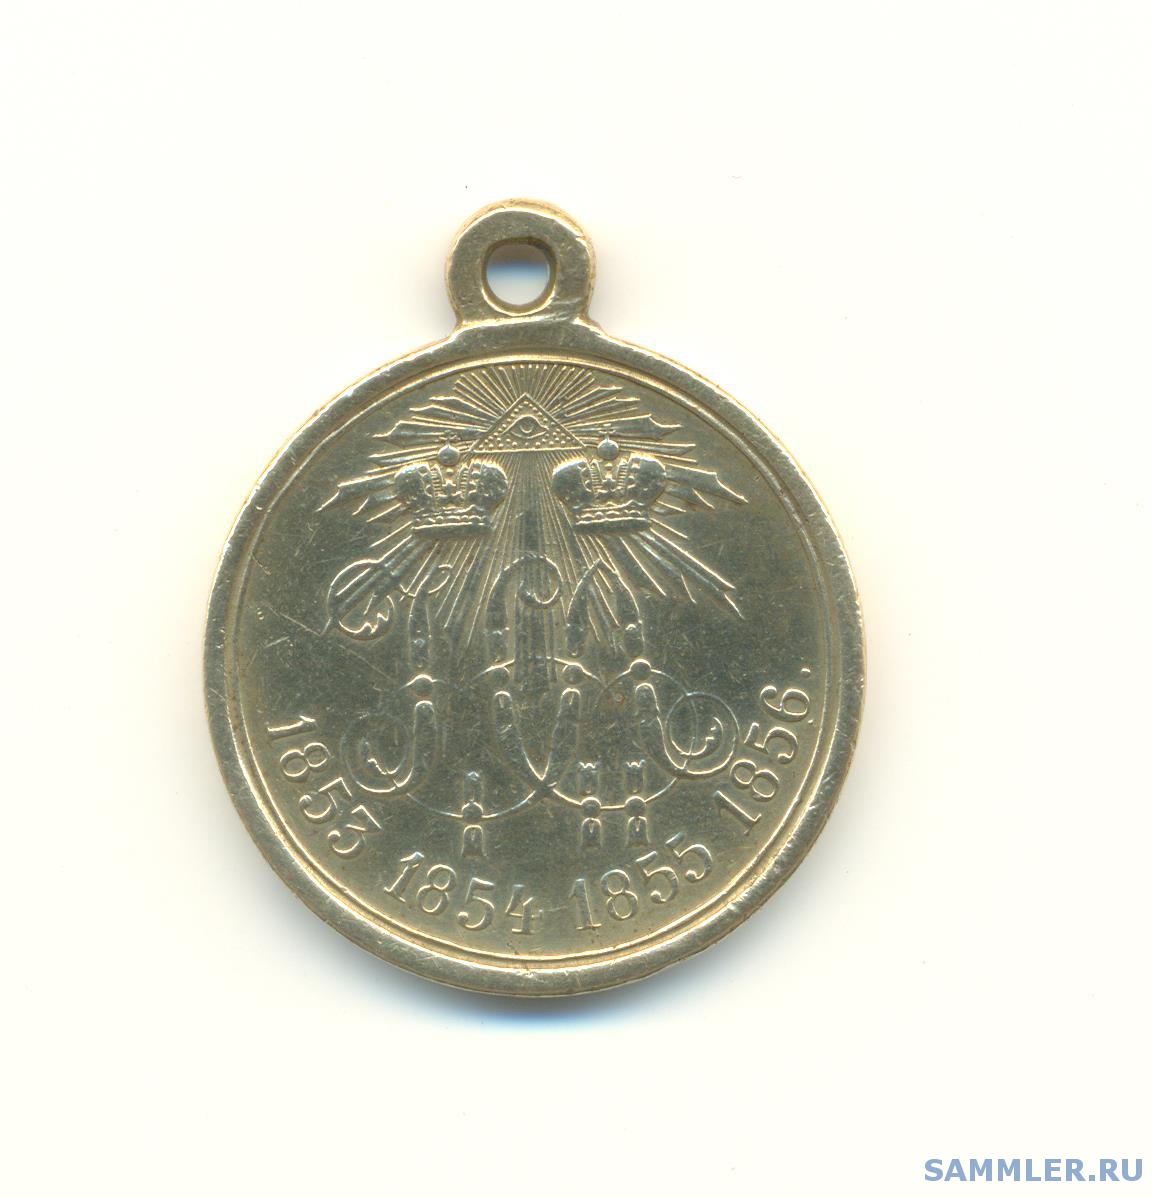 Медаль за крымскую войну 1853-56 гг-цена.